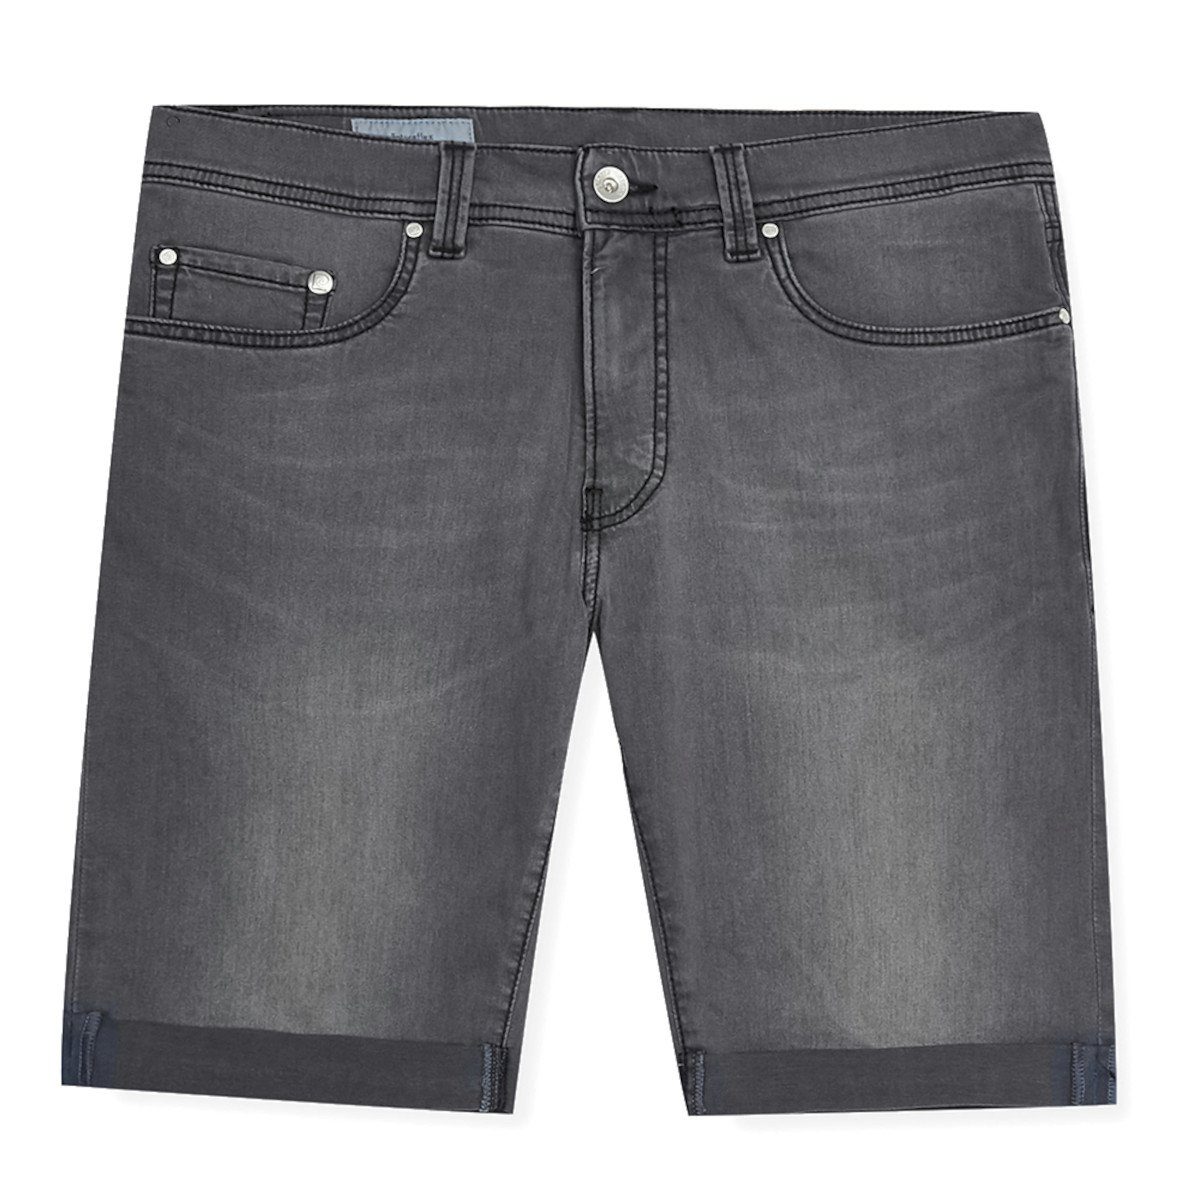 Pierre Cardin Shorts Pierre Cardin Shorts FUTURE FLEX 34520 fark grey fashion (9827)